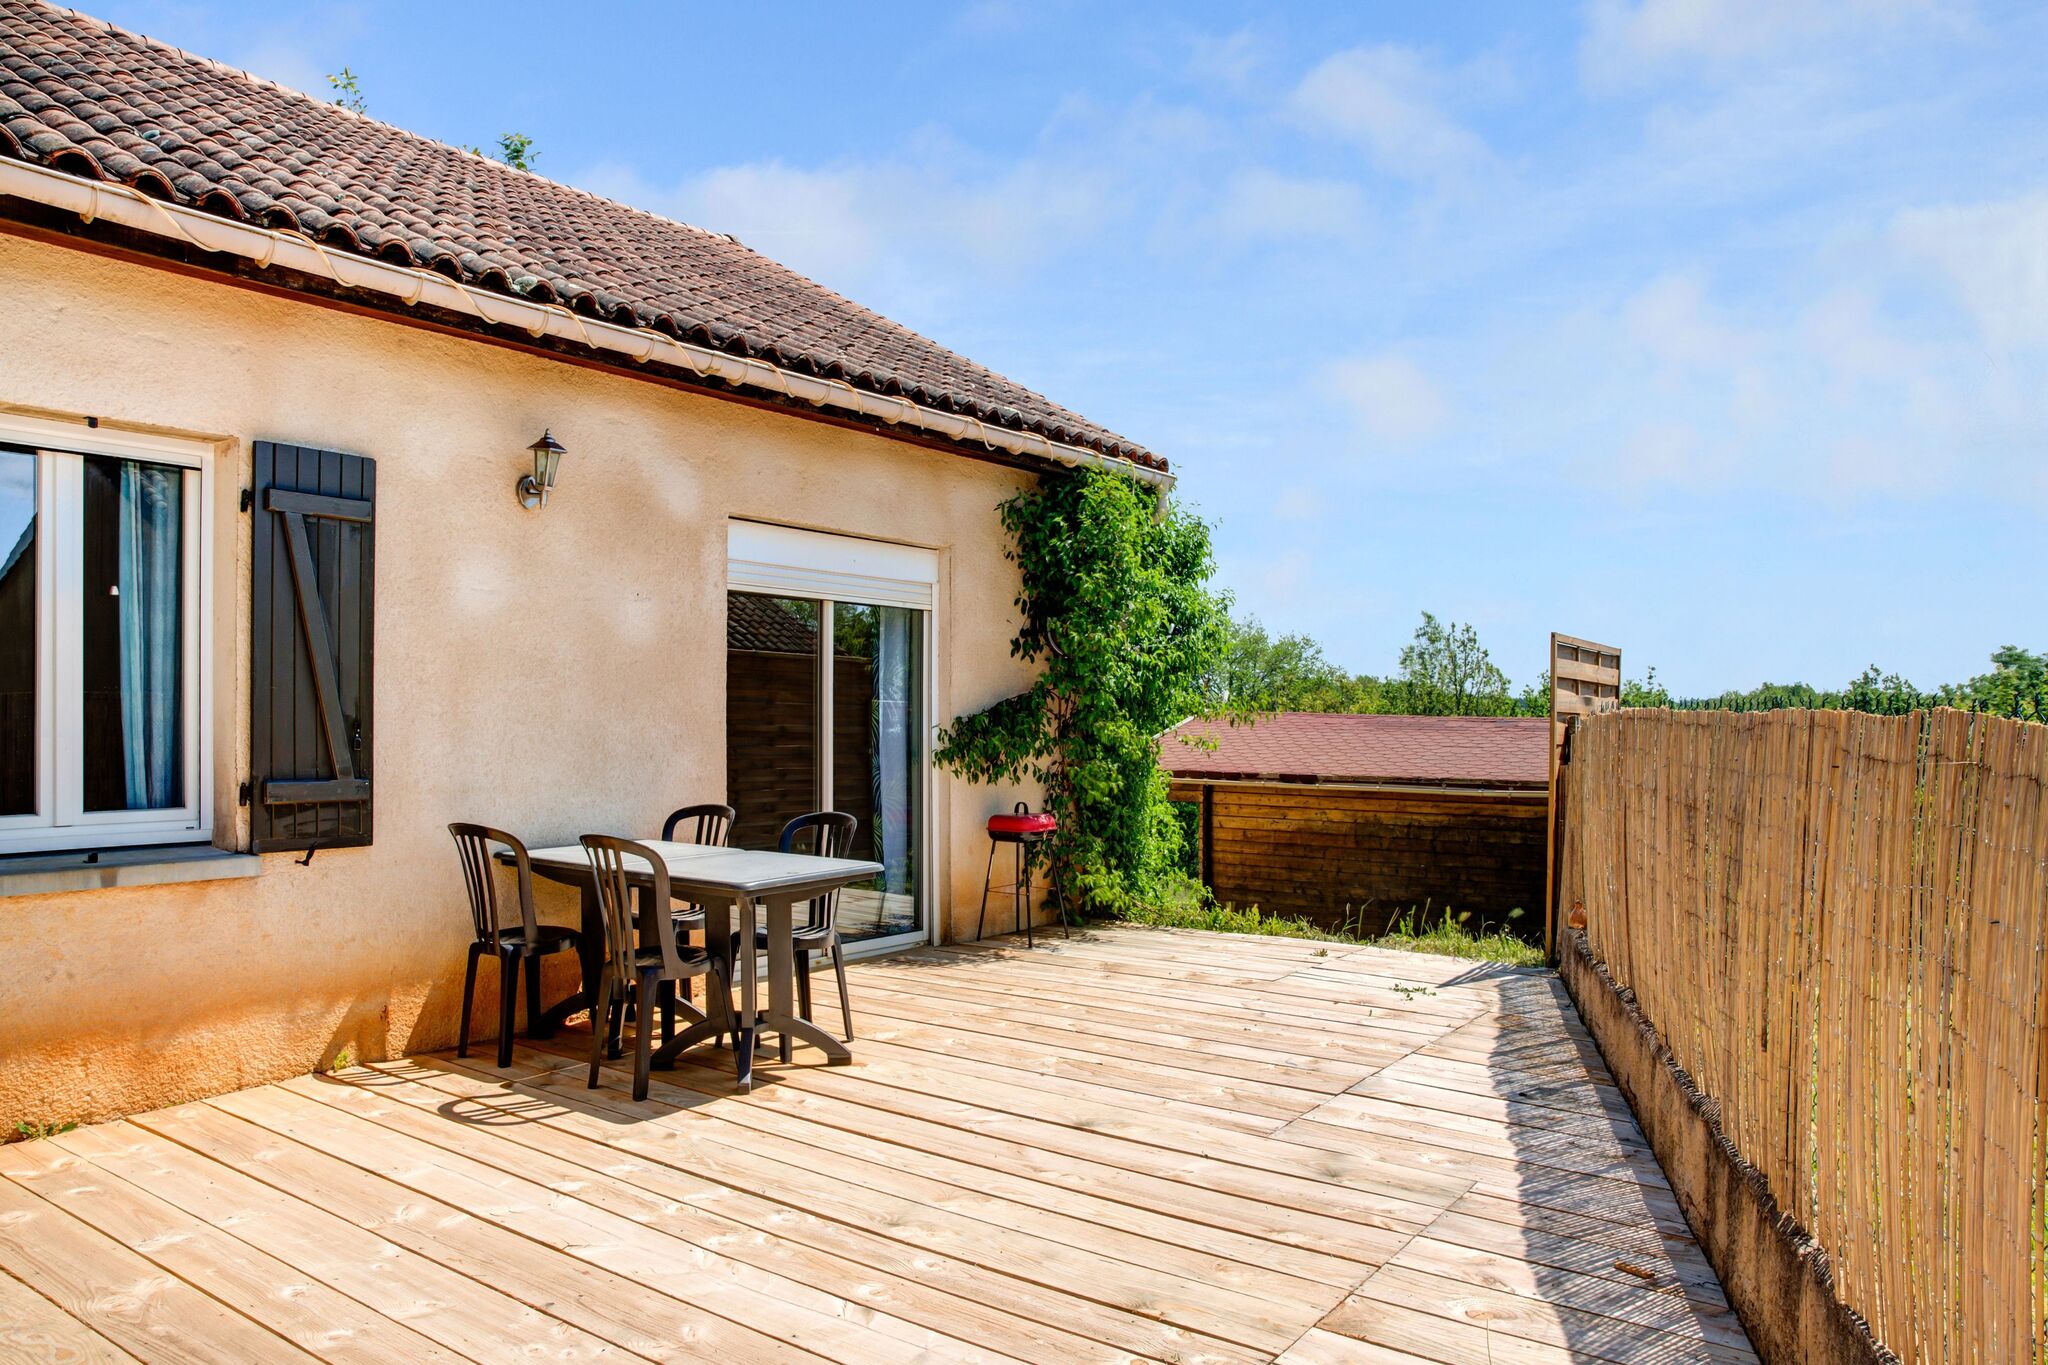 Gîte indépendant avec une belle vue sur les plus beaux endroits de la Dordogne.